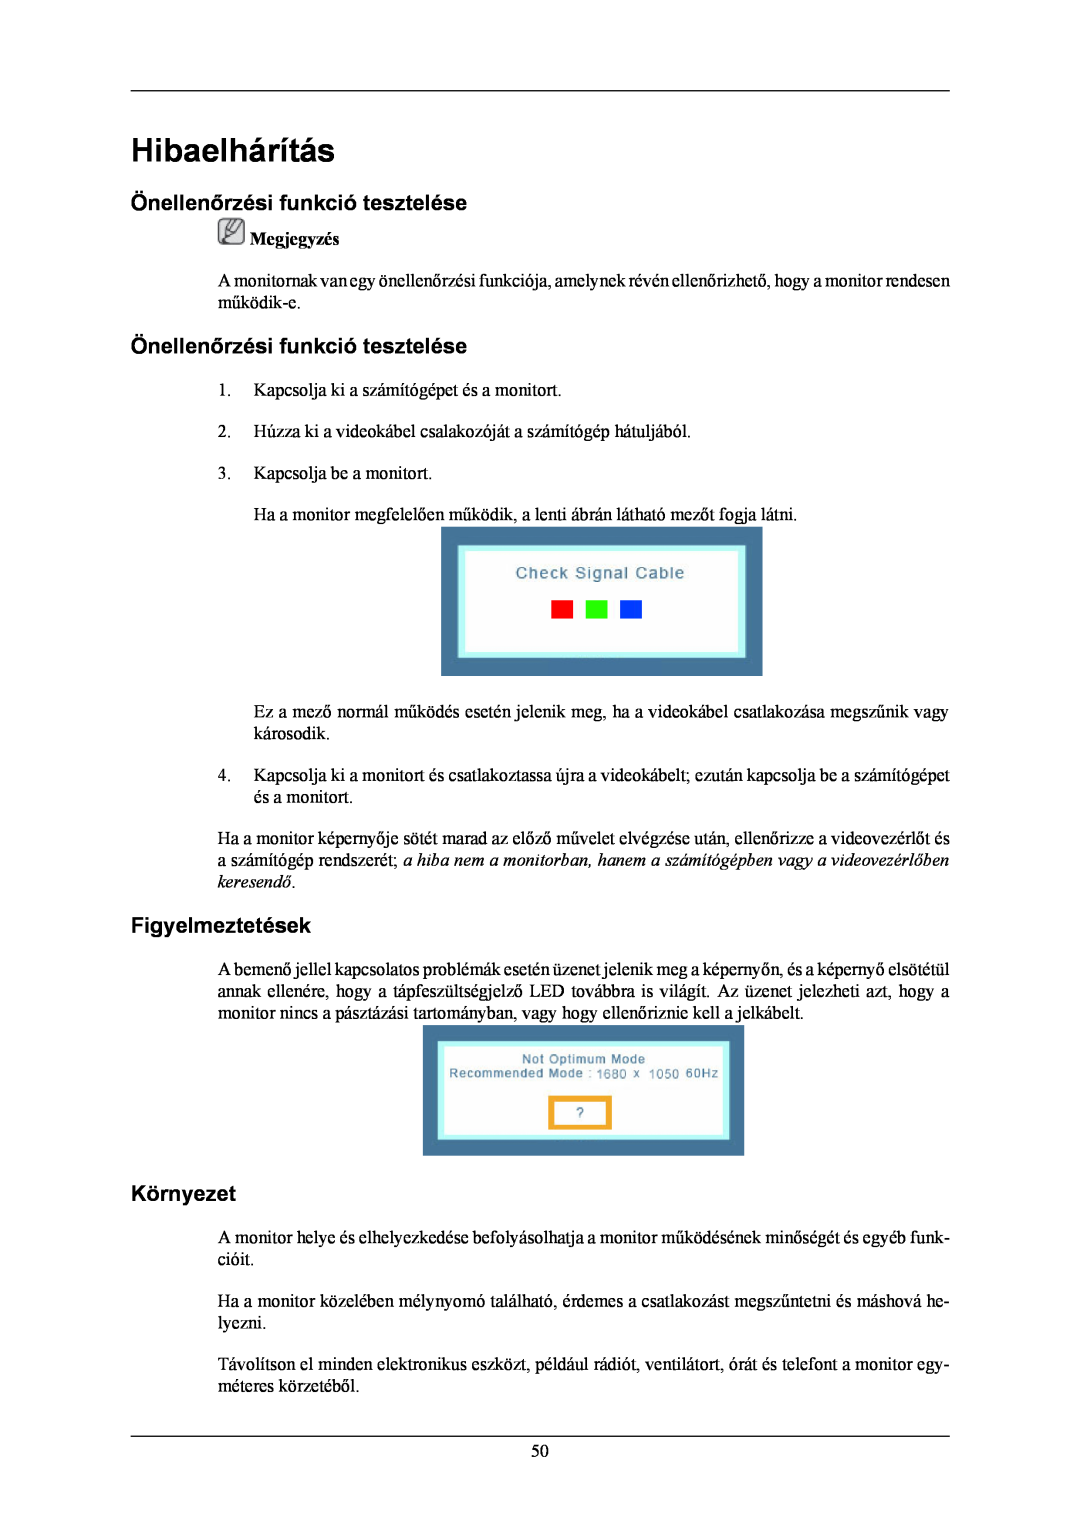 Samsung LS20MYNKF/EDC manual Hibaelhárítás, Önellenőrzési funkció tesztelése, Figyelmeztetések, Környezet, Megjegyzés 